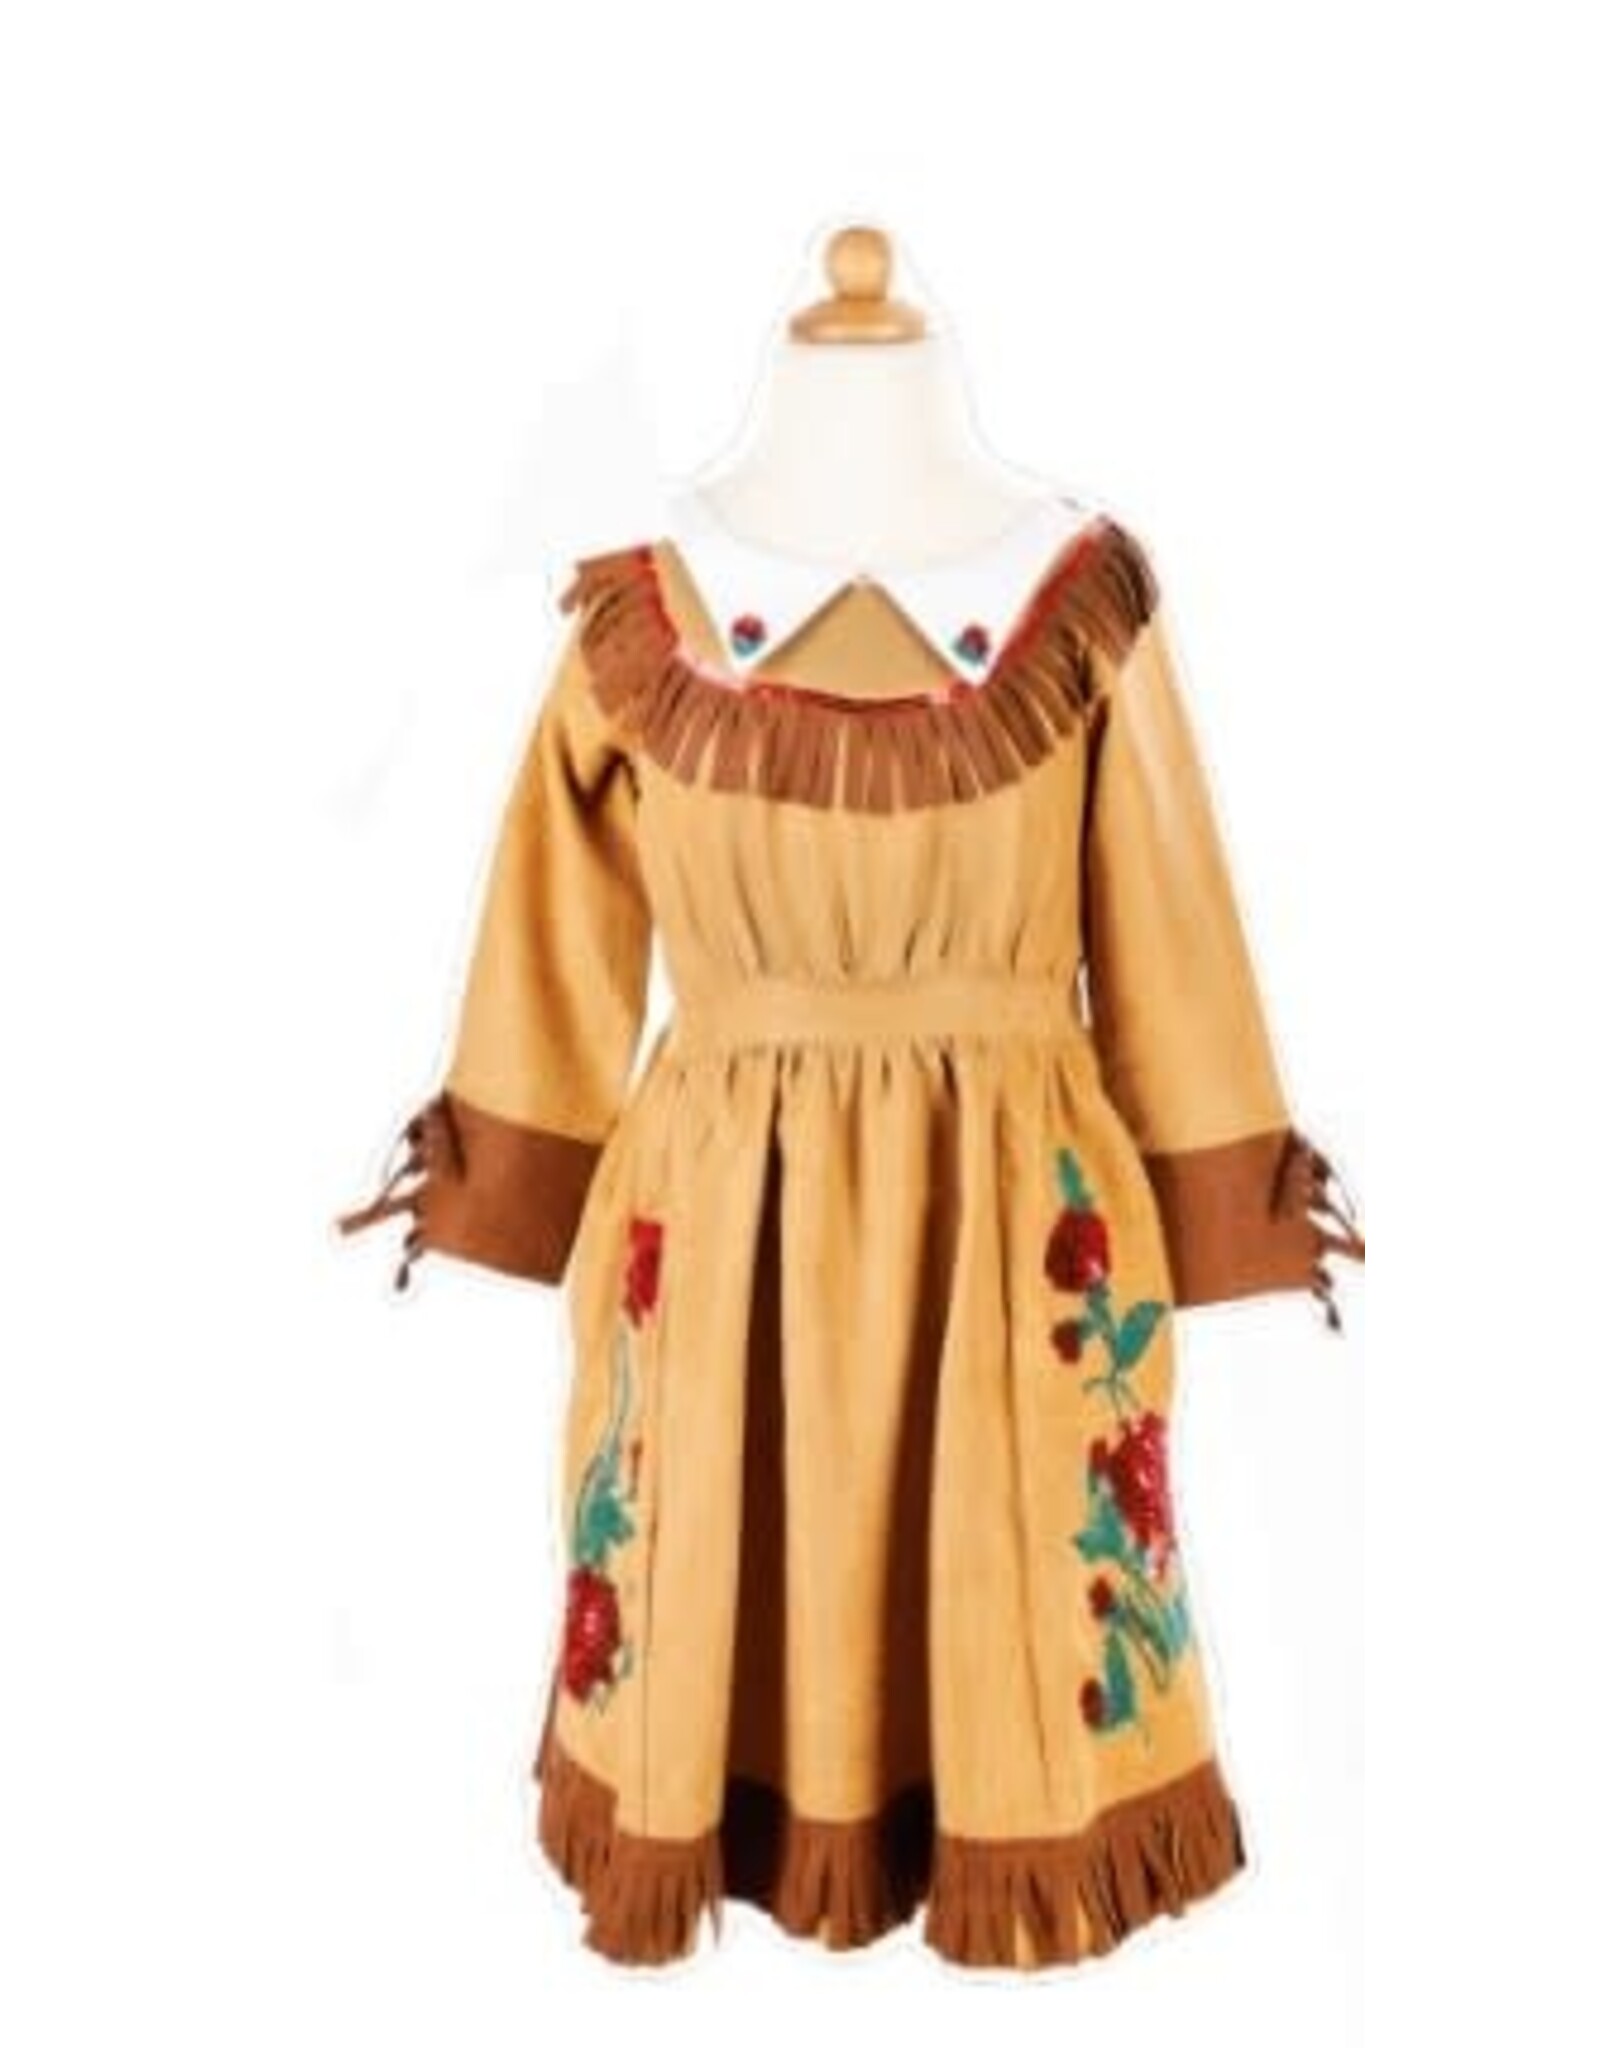 Great Pretenders Wild West Annie Dress, Brown, Size 5-6